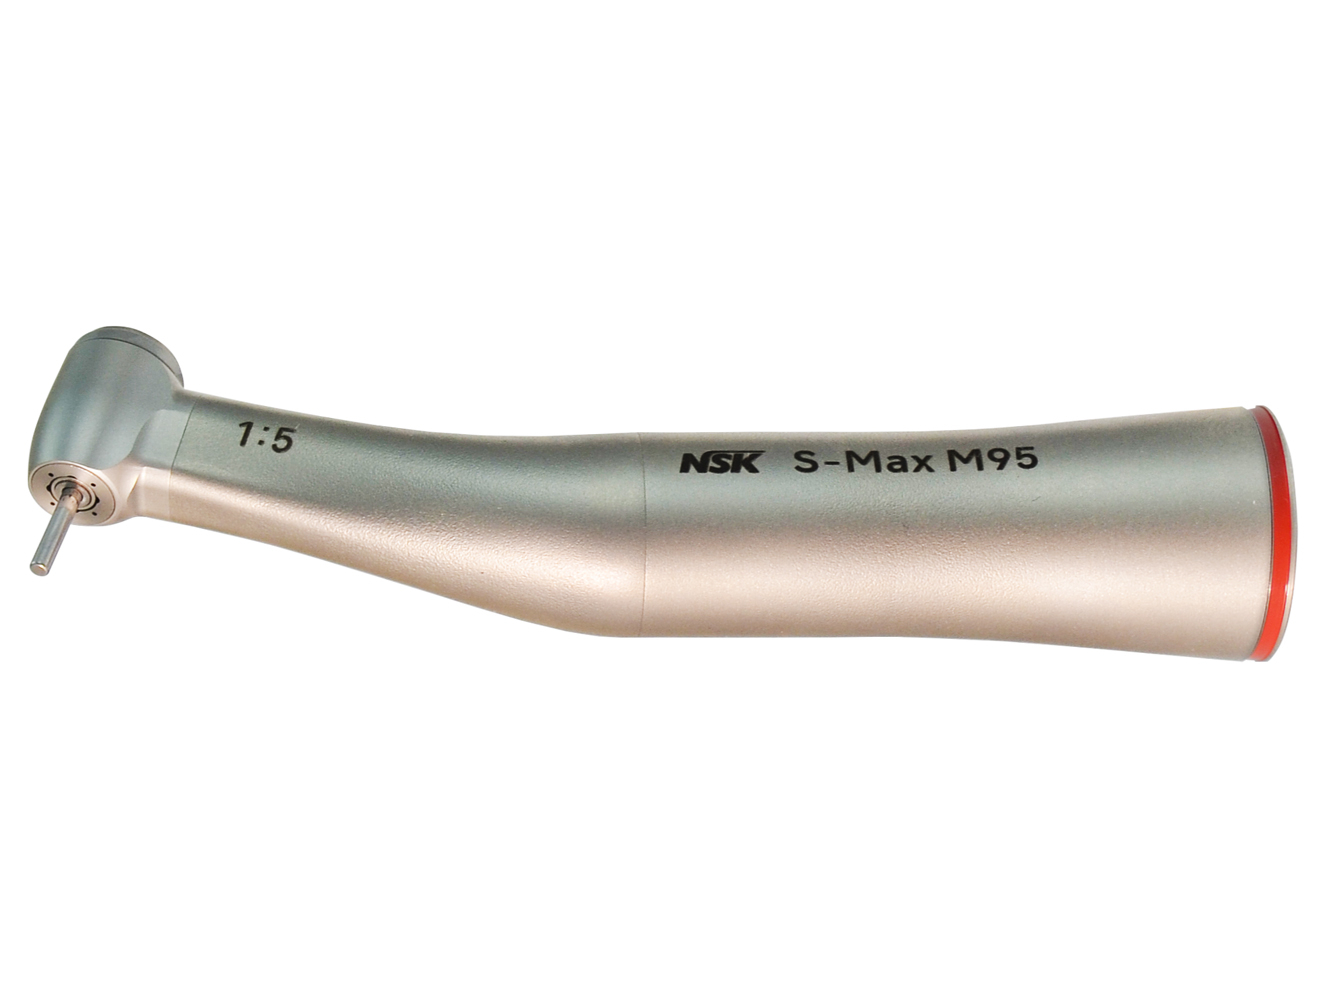 M95 Стоматологический наконечник угловой серии S-Max M, передача 1:5, NSK (Япония)